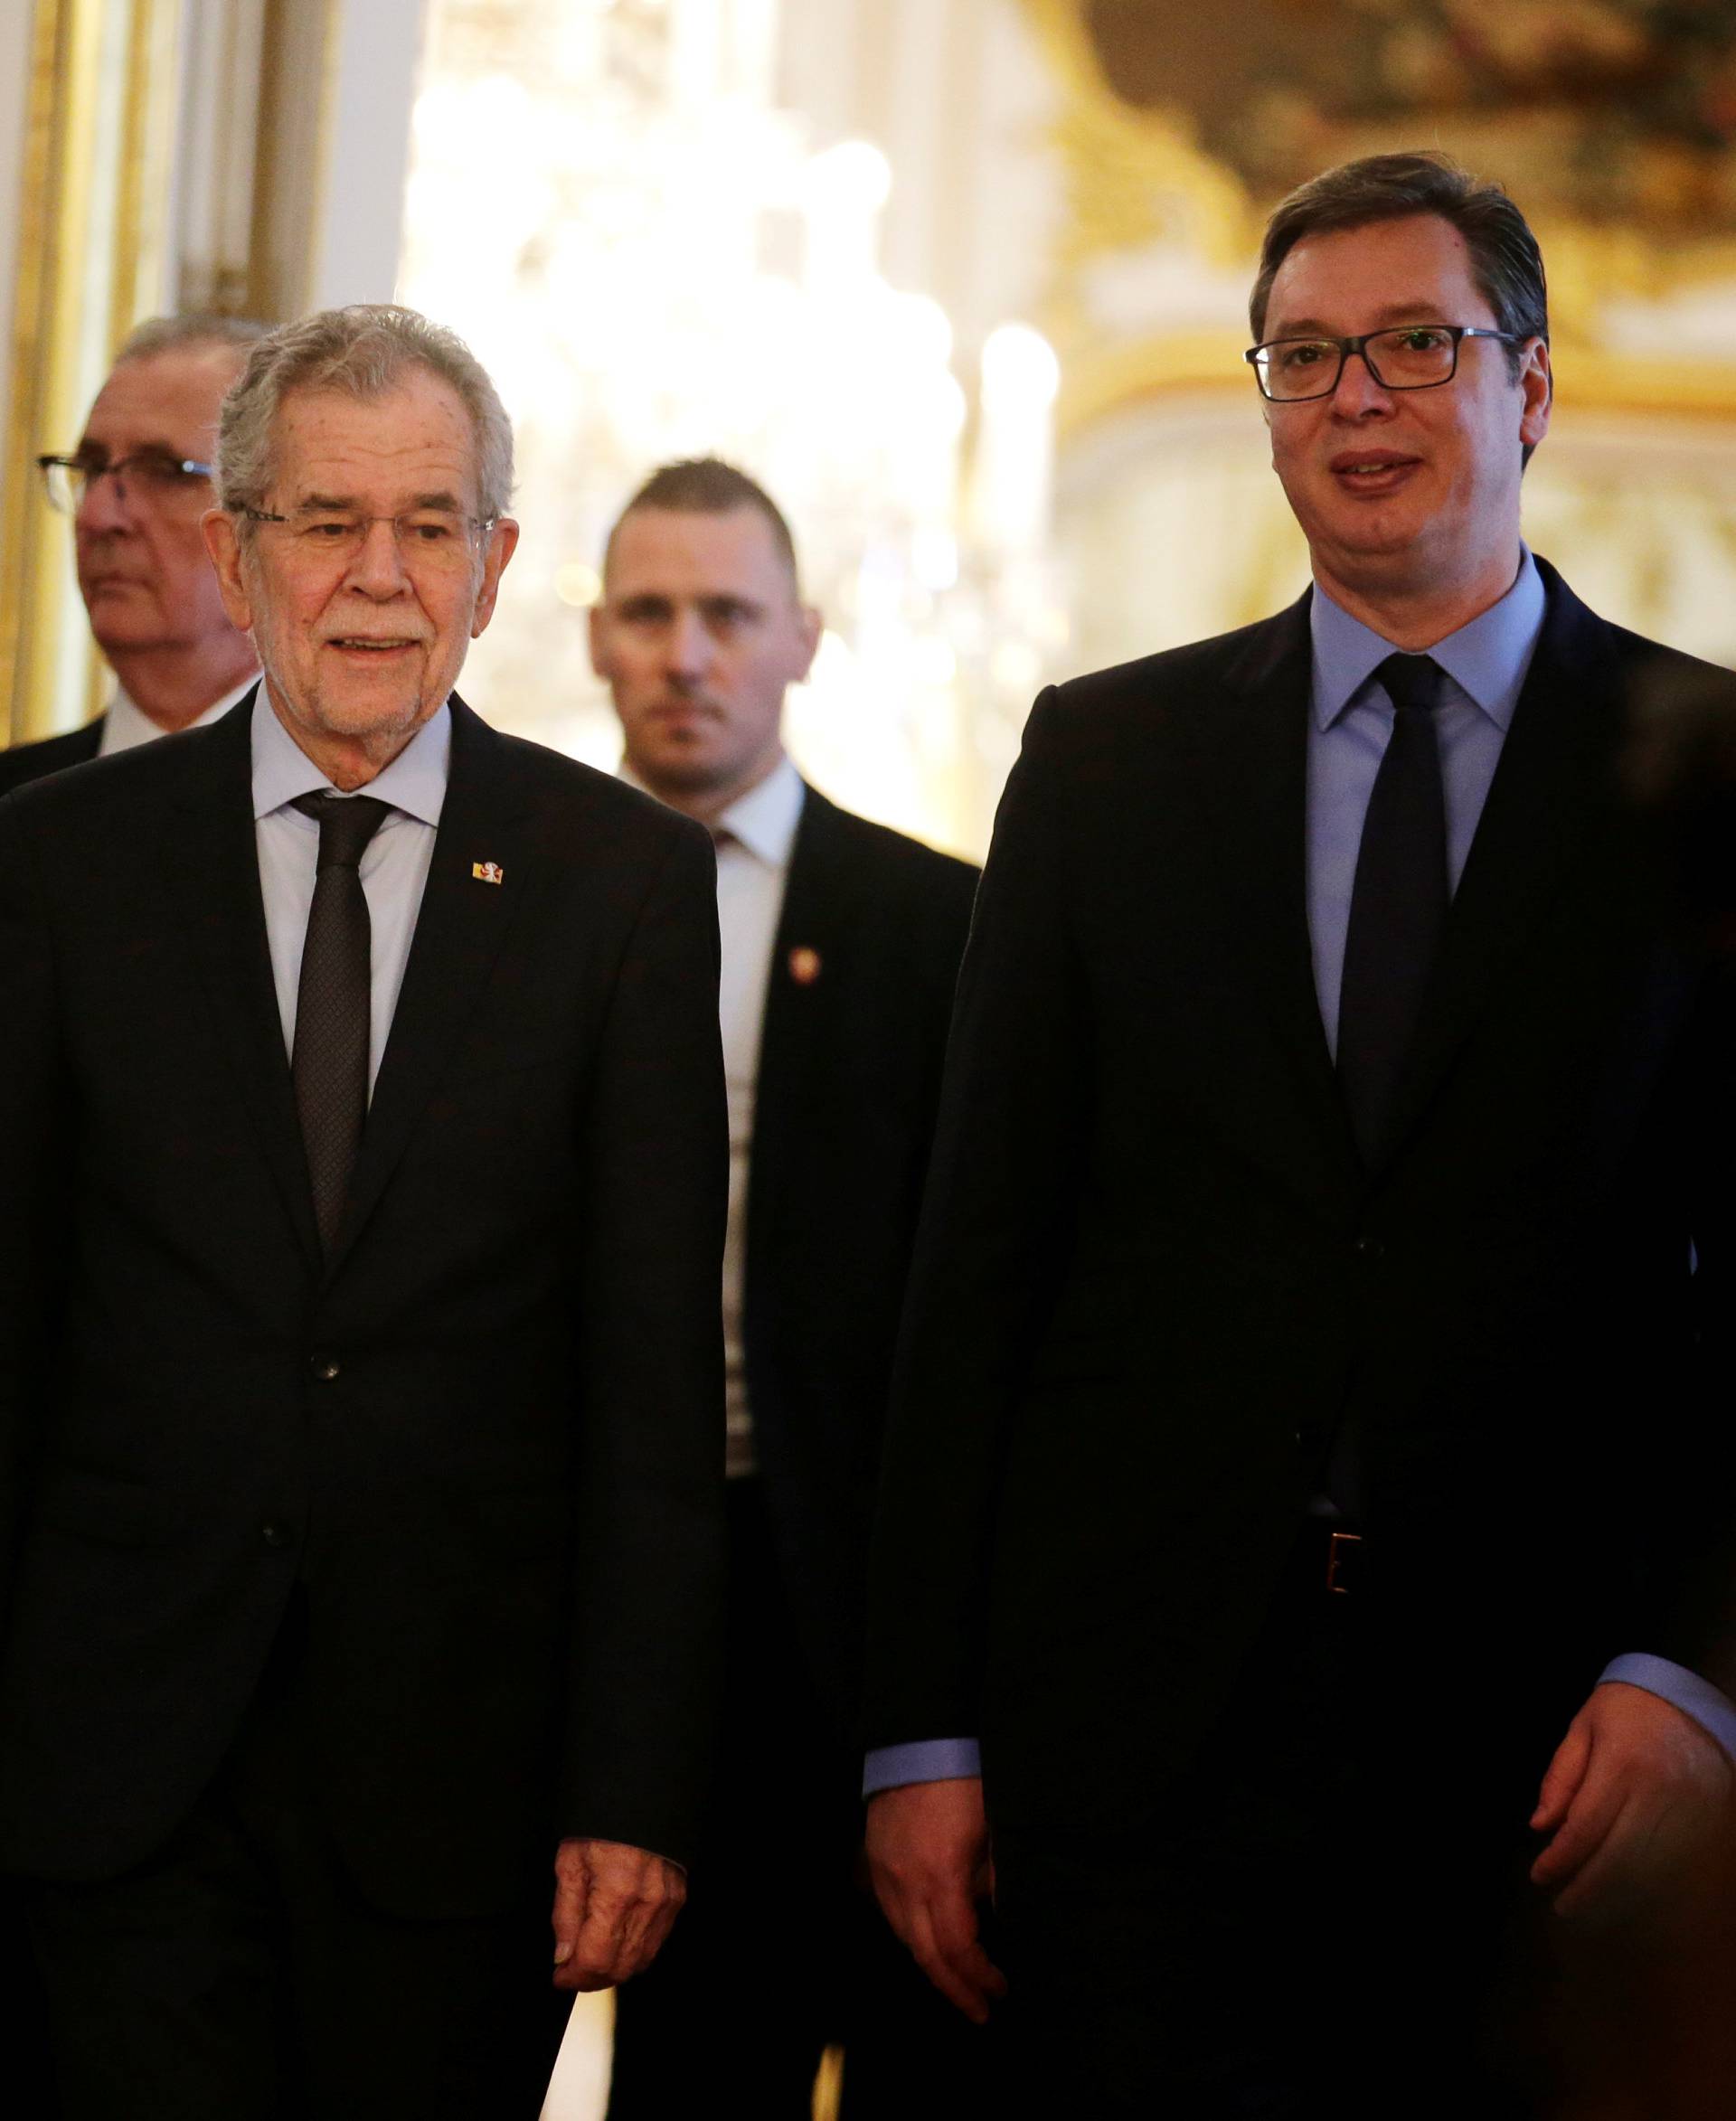 Austria's President Van der Bellen and Serbia's President Vucic arrive at the presidential office in Vienna